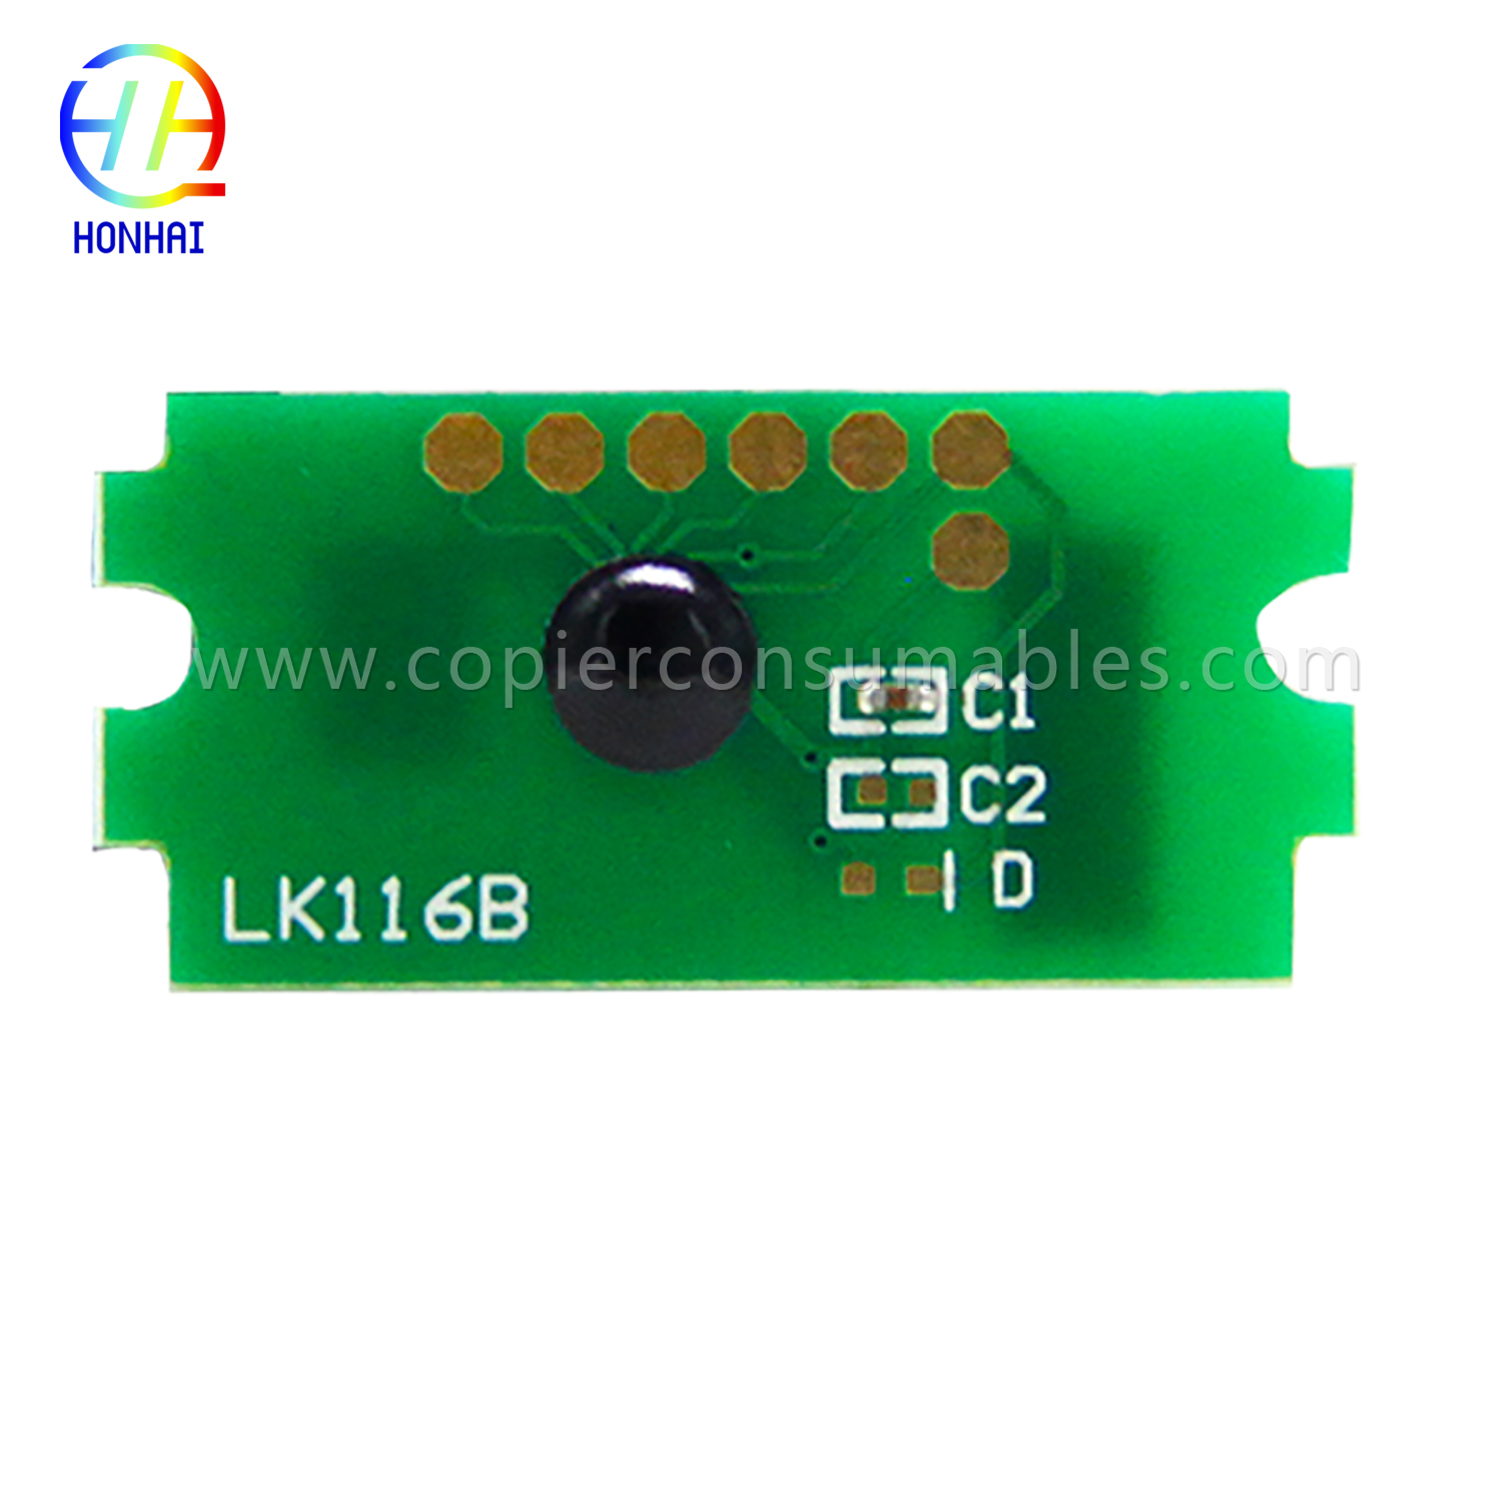 Toner Cartridge Chip foar Kyocera Ecosys P2040dn P2040dw (TK-1164) (2) 拷贝